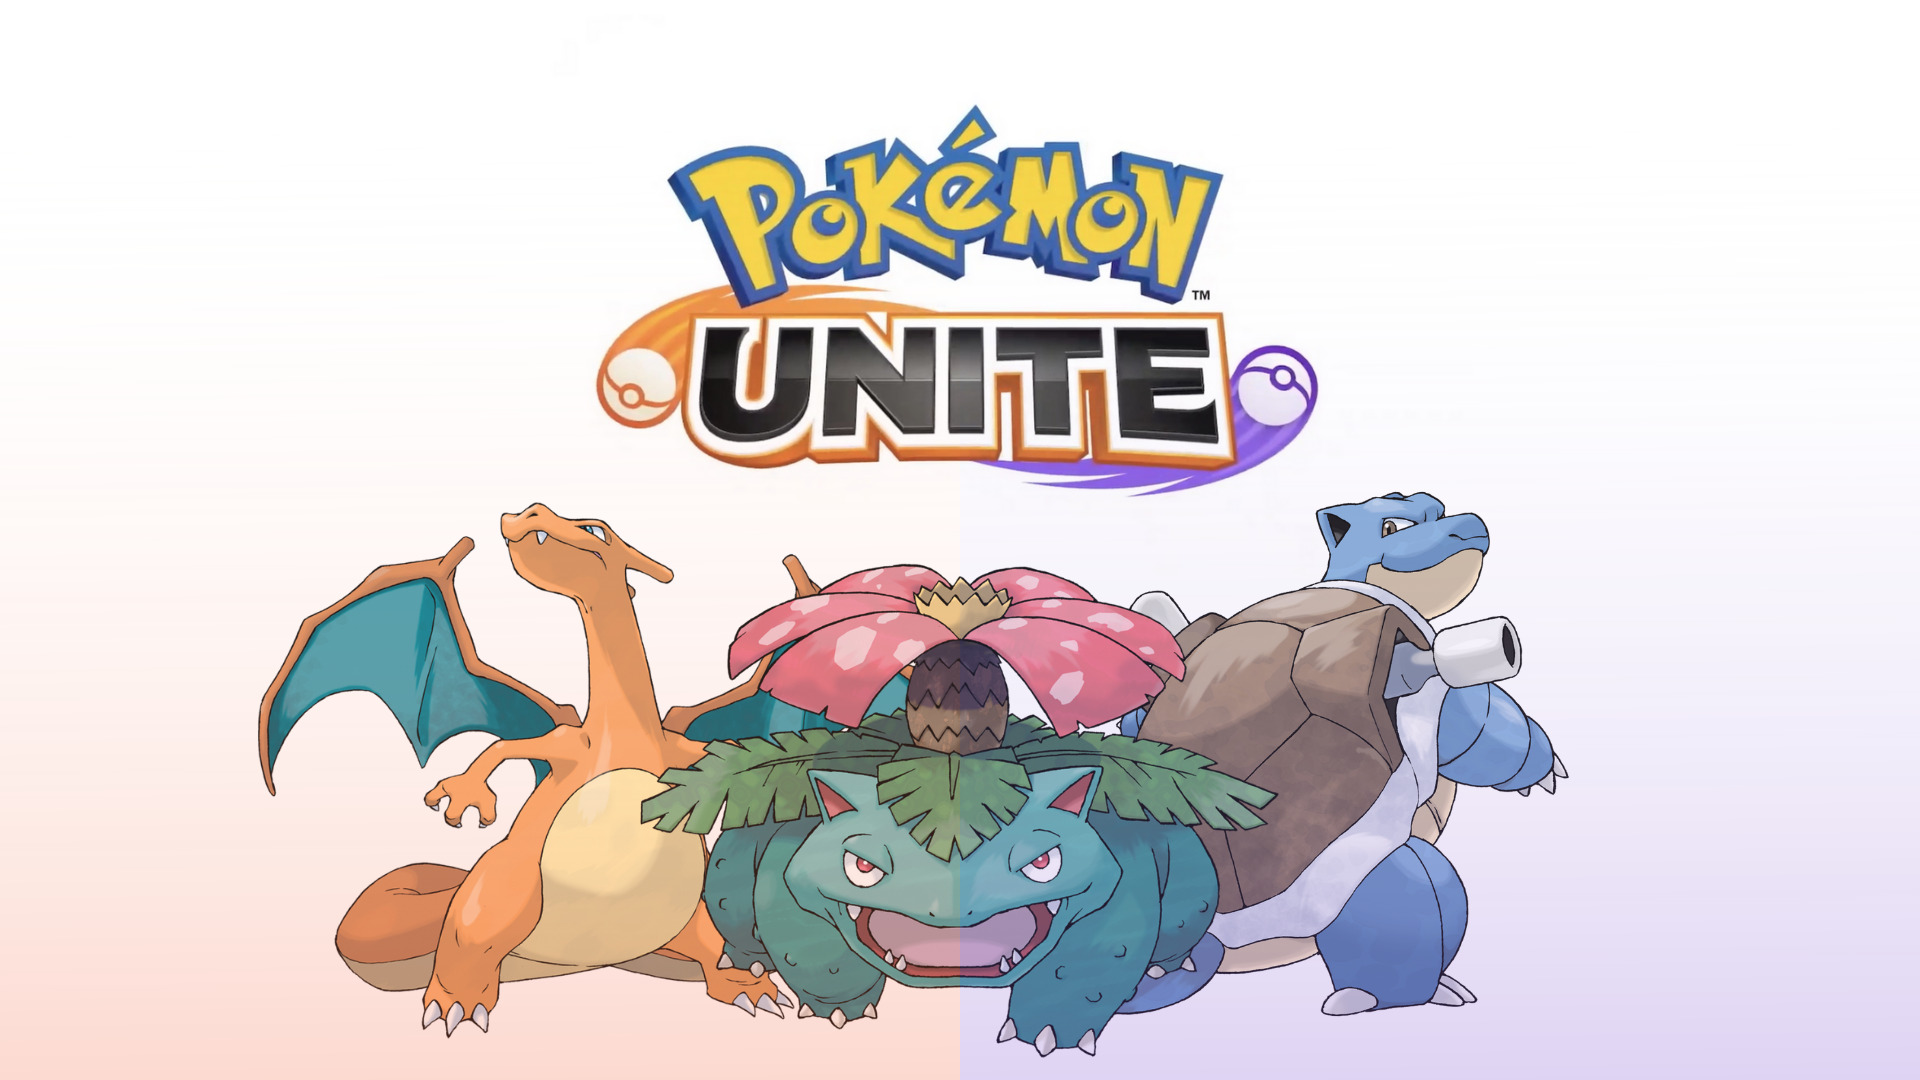 Descarga gratuita de fondo de pantalla para móvil de Pokémon, Videojuego, Charizard (Pokémon), Venusaur (Pokémon), Blastoise (Pokémon), Pokémon Unite.